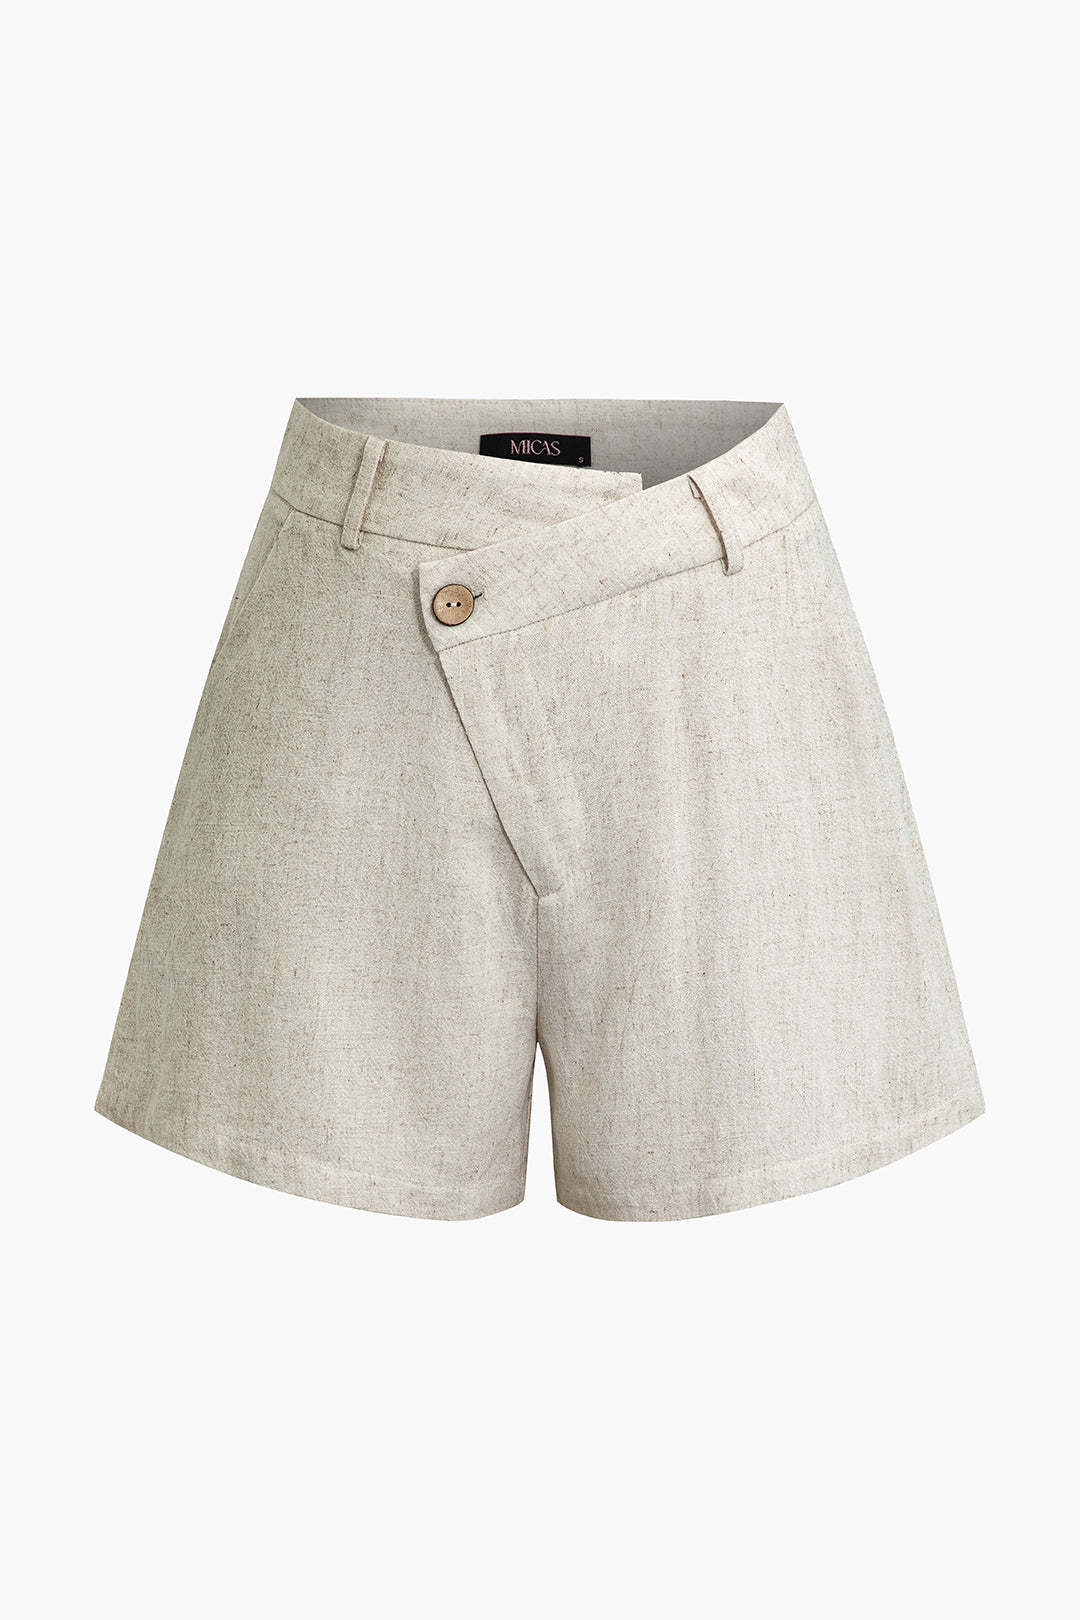 Asymmetric Linen Shorts